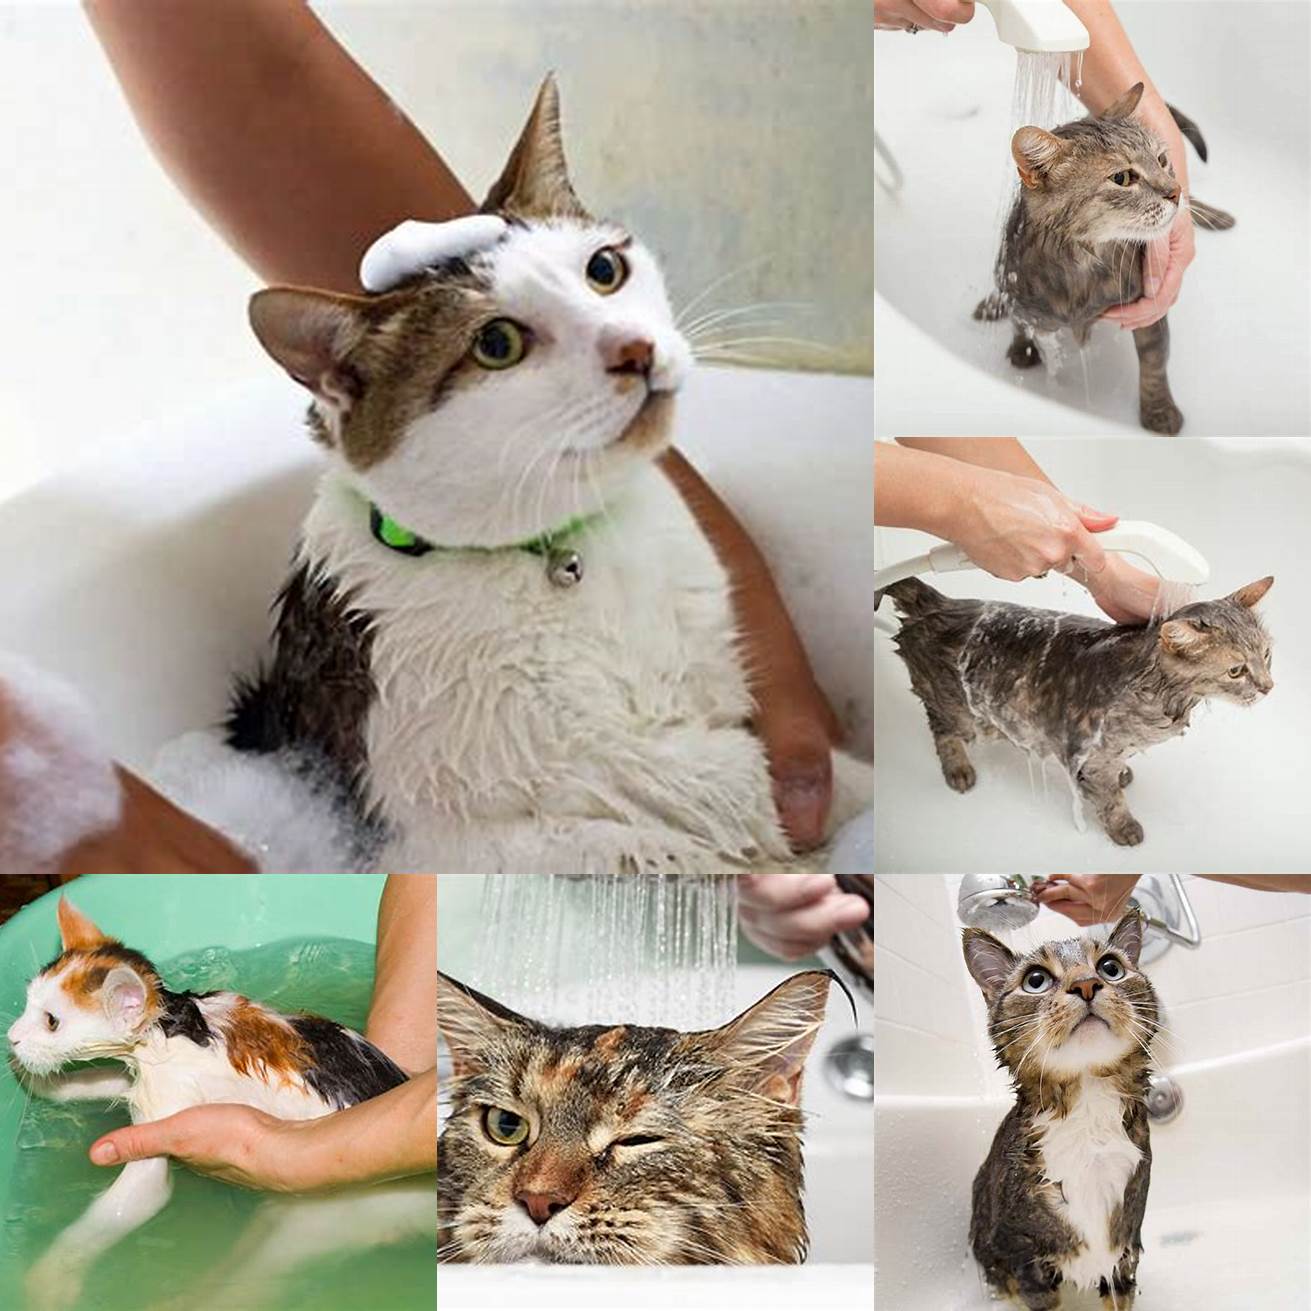 Bathe your cat